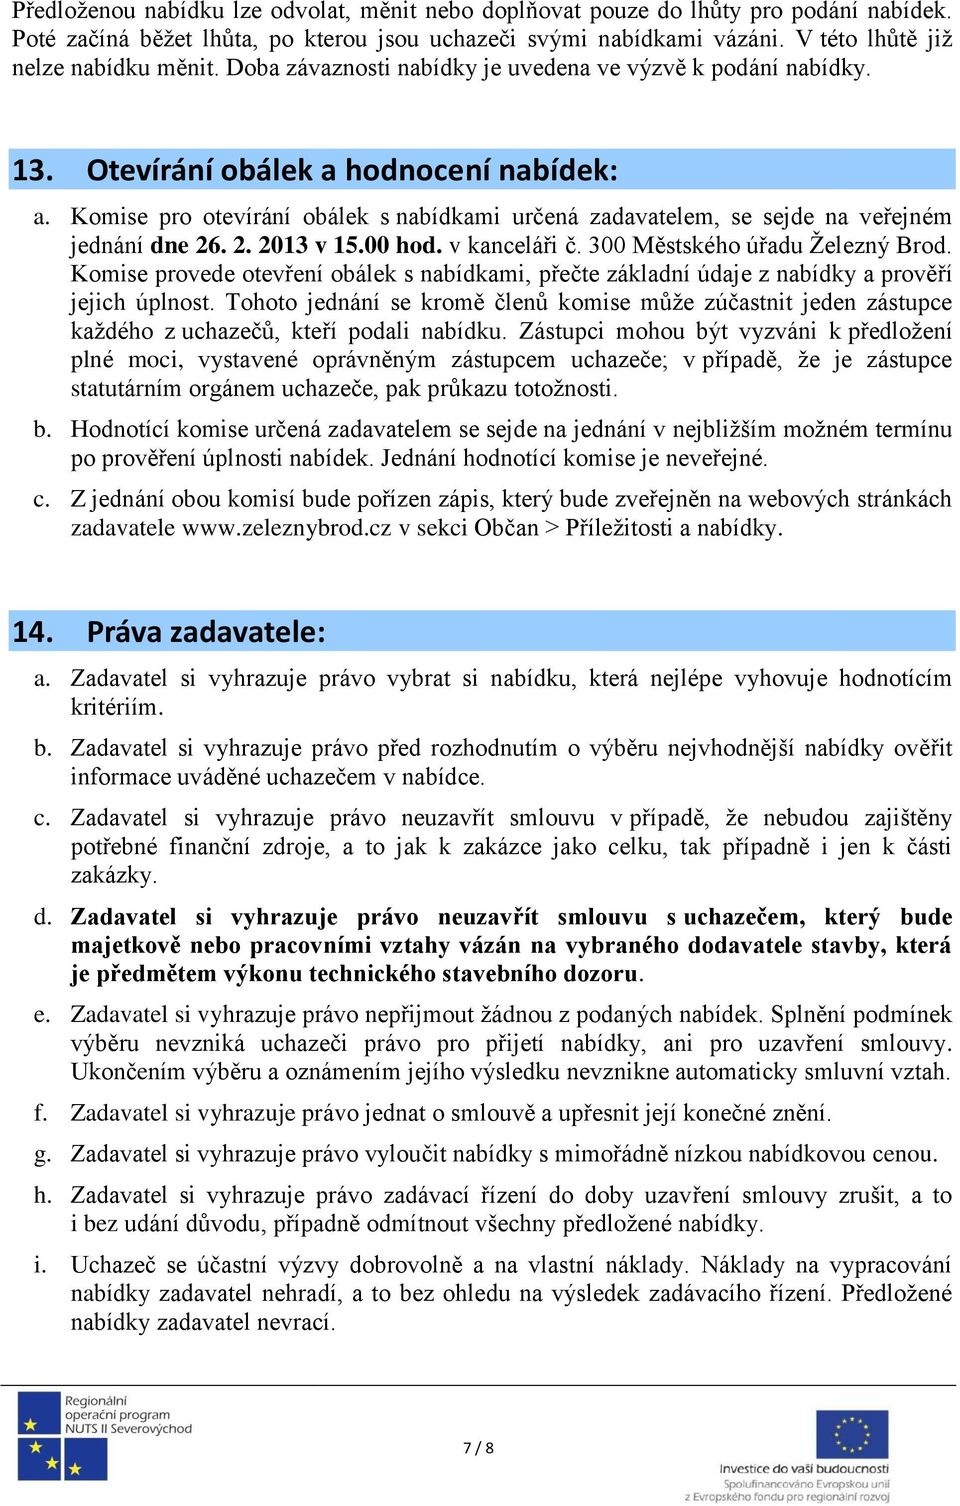 Komise pro otevírání obálek s nabídkami určená zadavatelem, se sejde na veřejném jednání dne 26. 2. 2013 v 15.00 hod. v kanceláři č. 300 Městského úřadu Železný Brod.